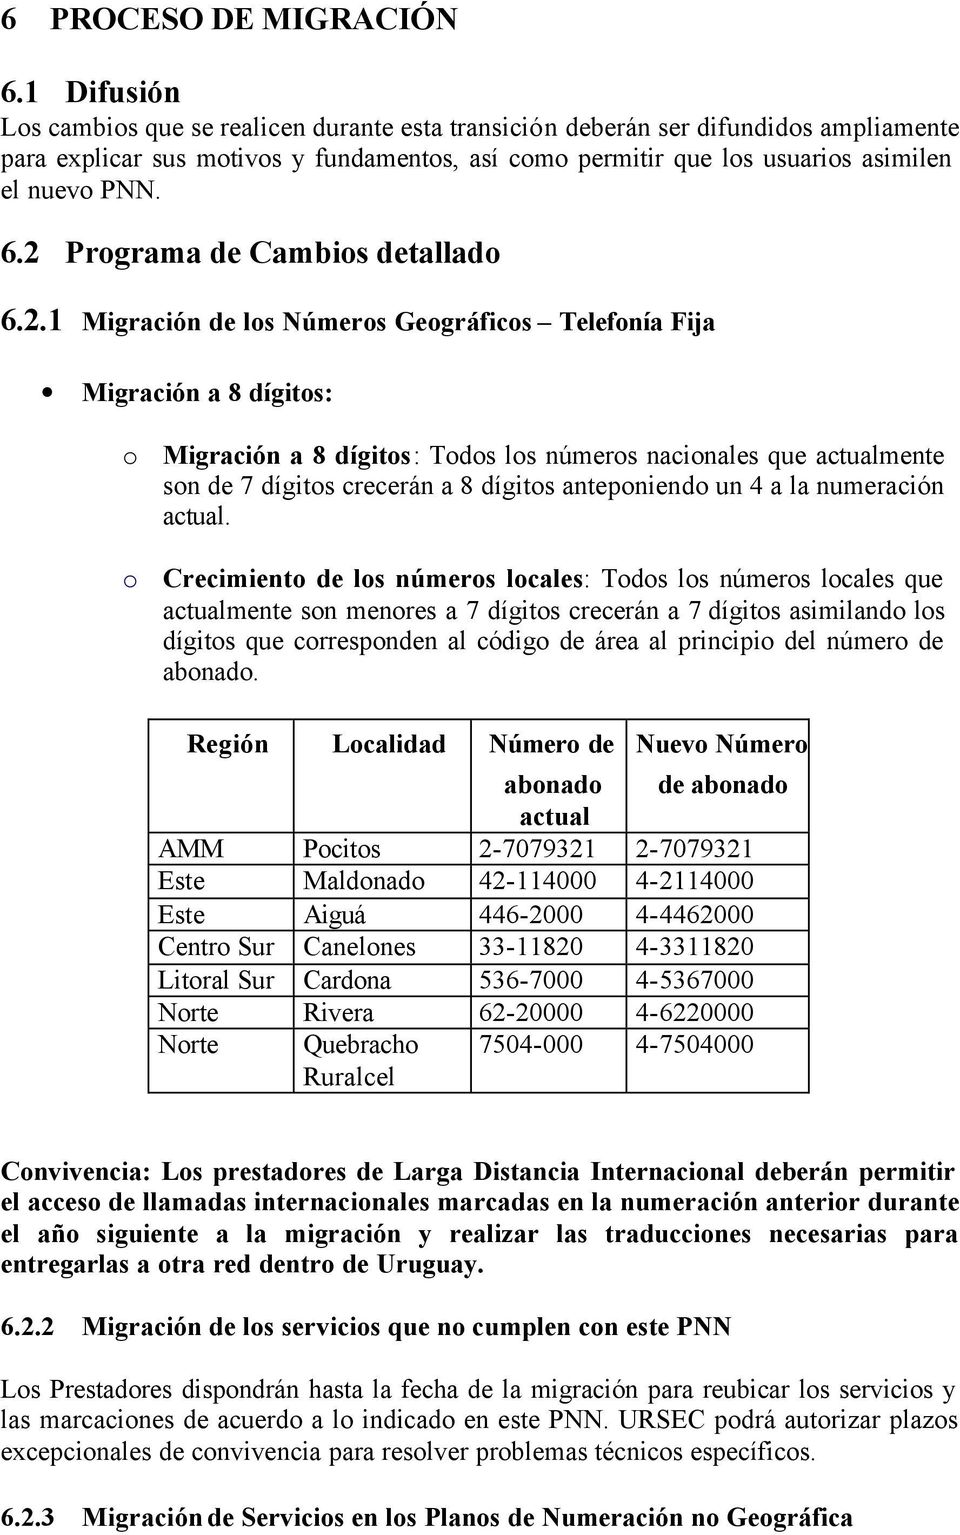 2 Programa de Cambios detallado 6.2.1 Migración de los Números Geográficos Telefonía Fija Migración a 8 dígitos: o Migración a 8 dígitos: Todos los números nacionales que actualmente son de 7 dígitos